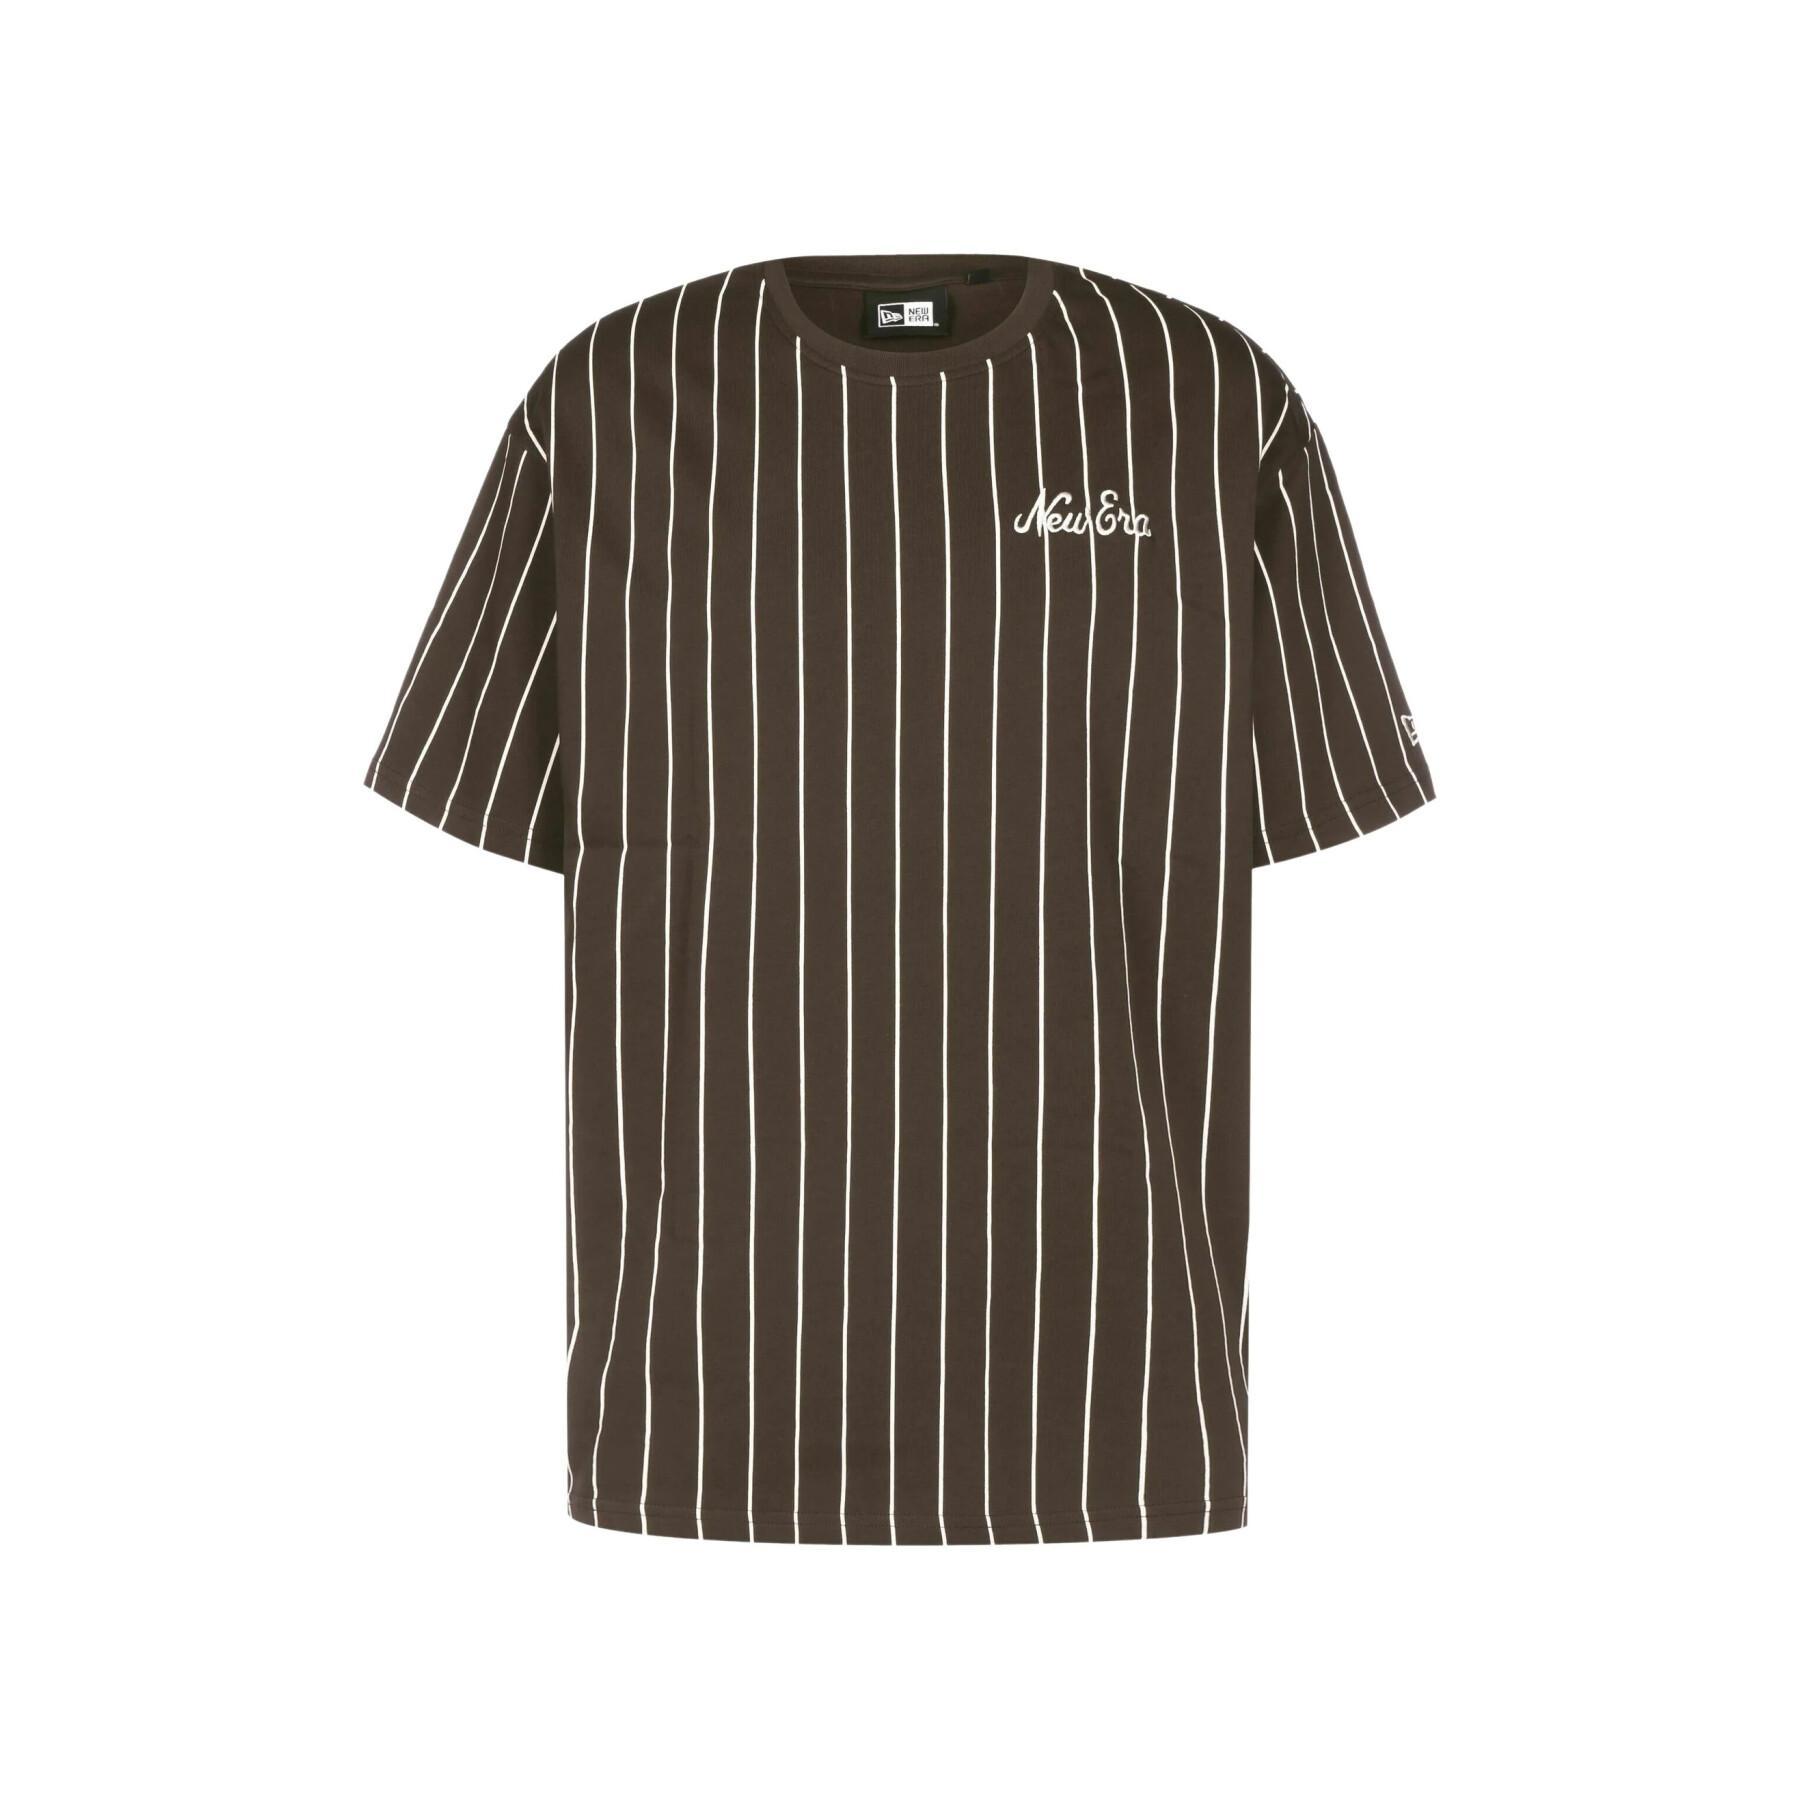 T-shirt sobredimensionada New Era Pinstripe